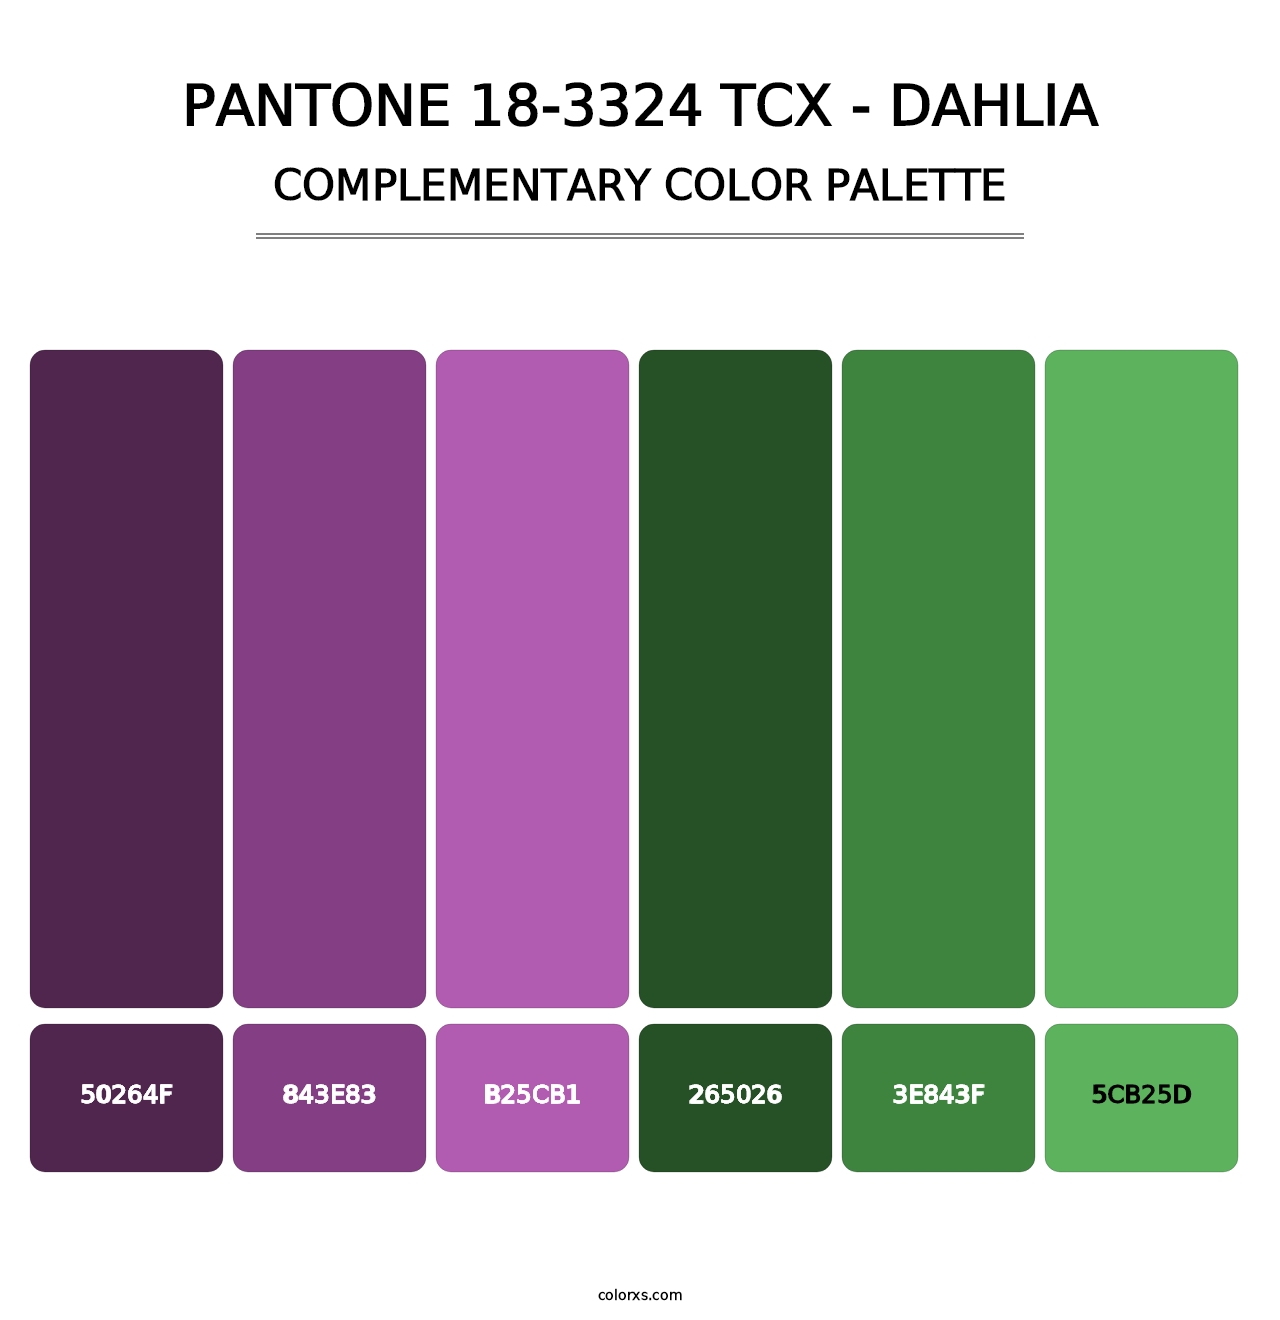 PANTONE 18-3324 TCX - Dahlia - Complementary Color Palette